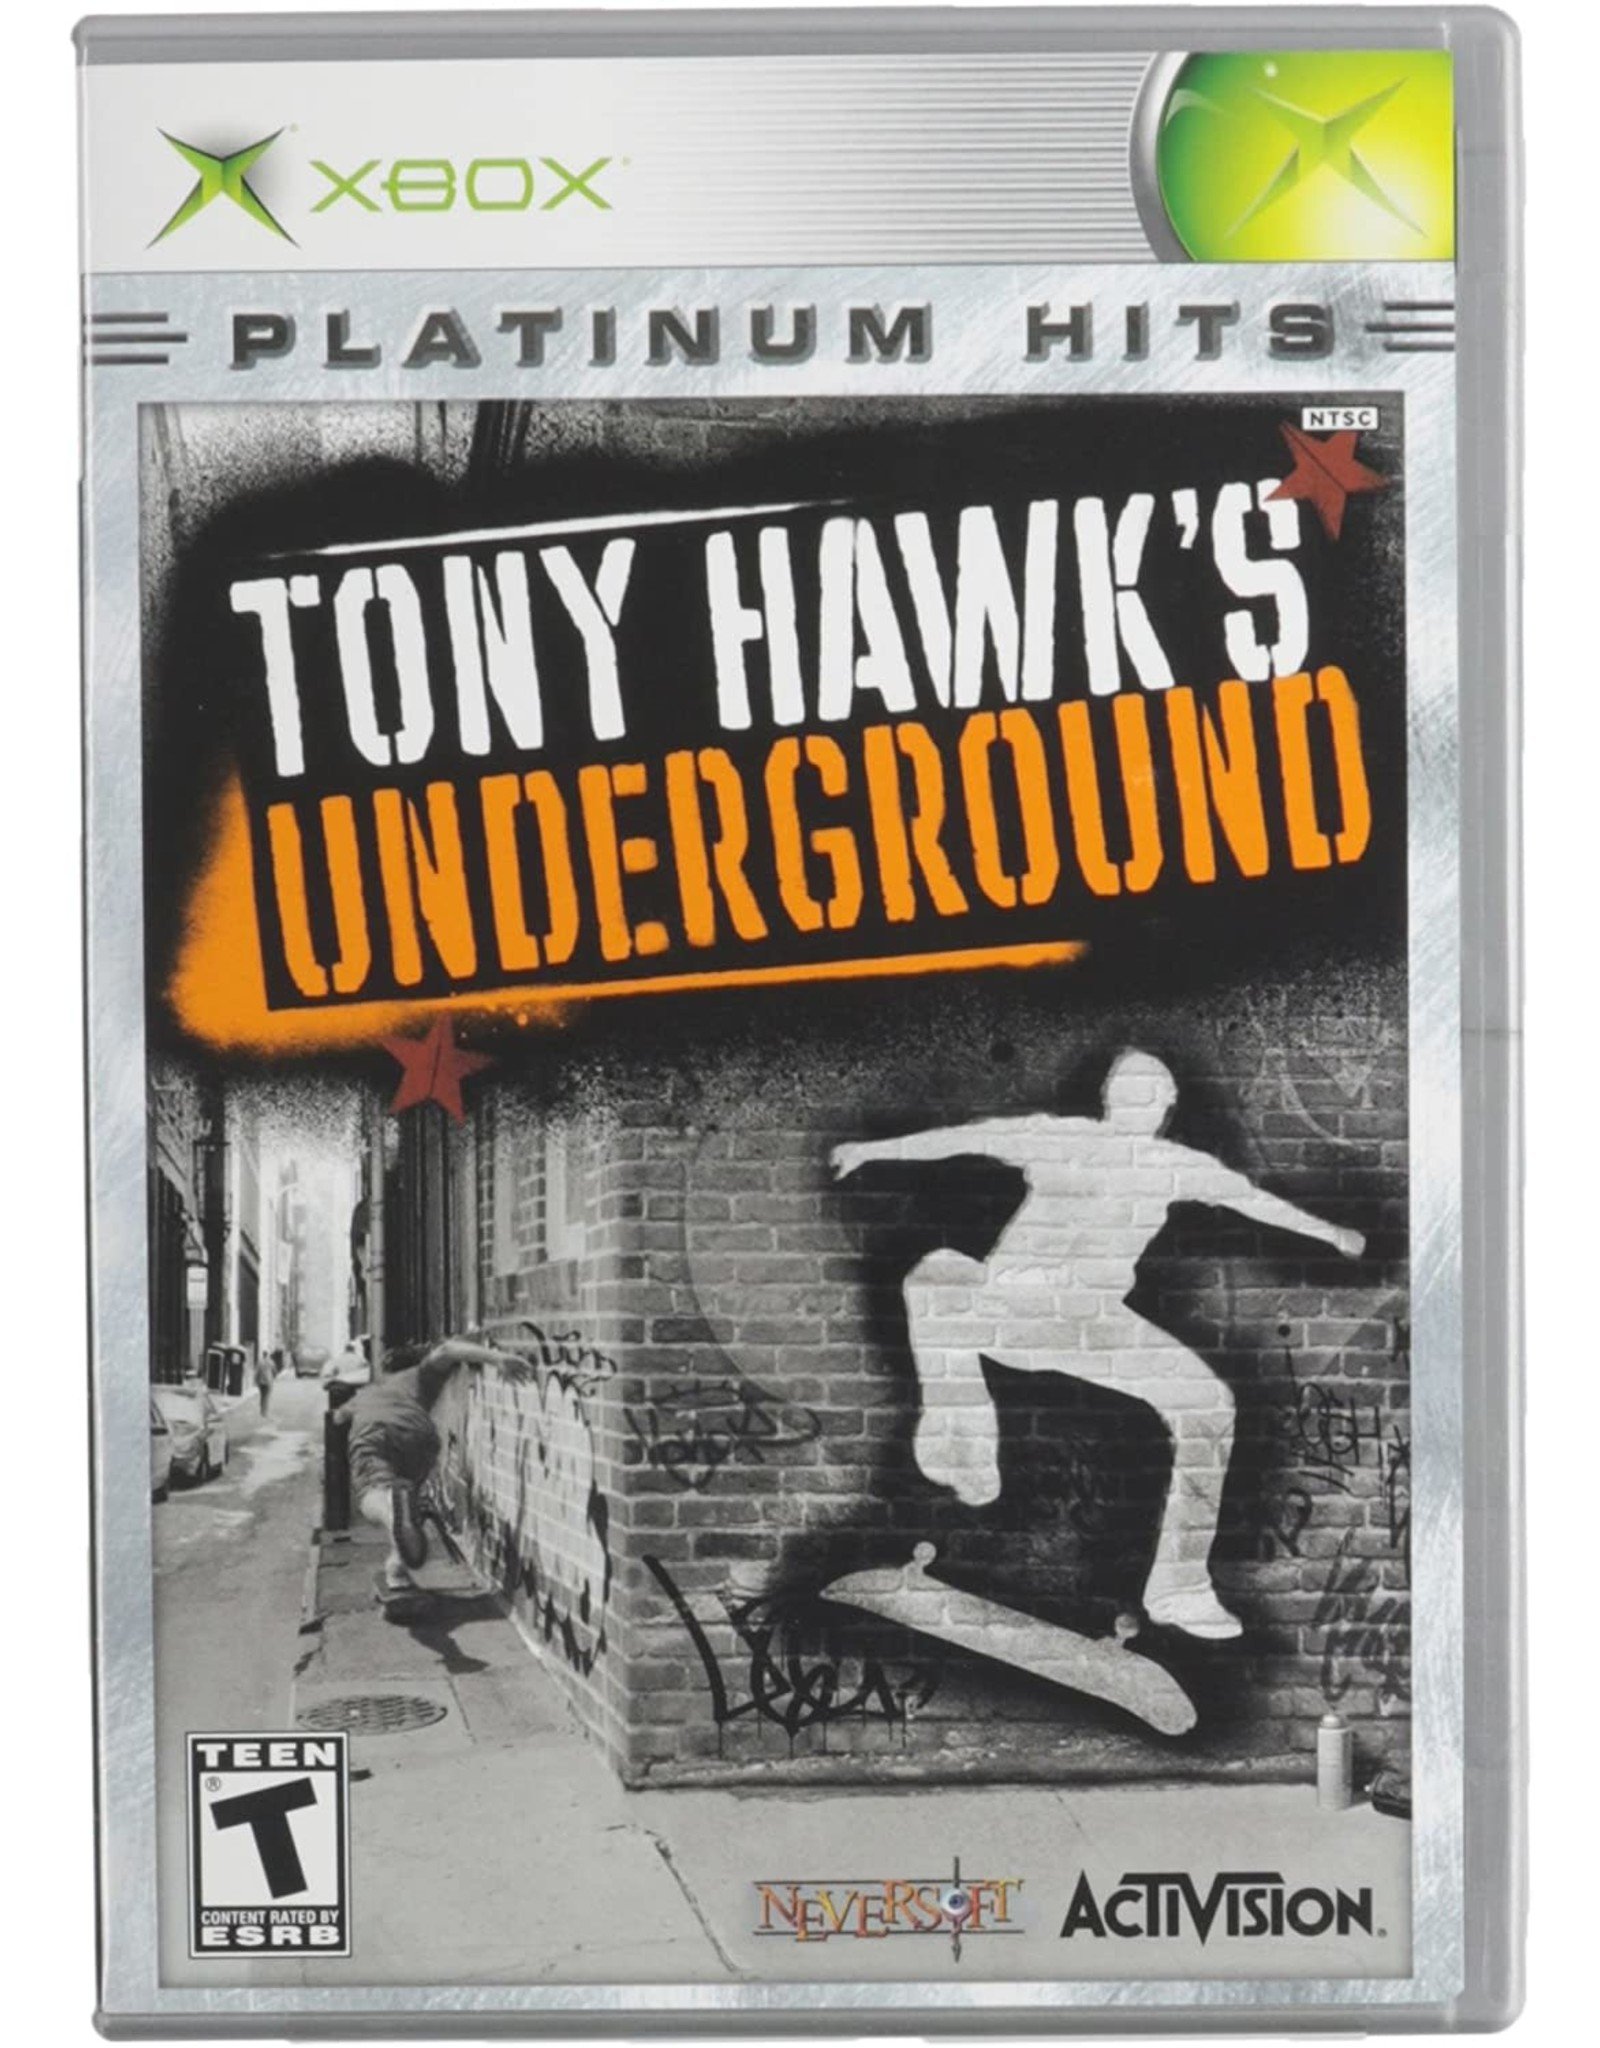 Xbox Tony Hawk Underground - Platinum Hits (Used)